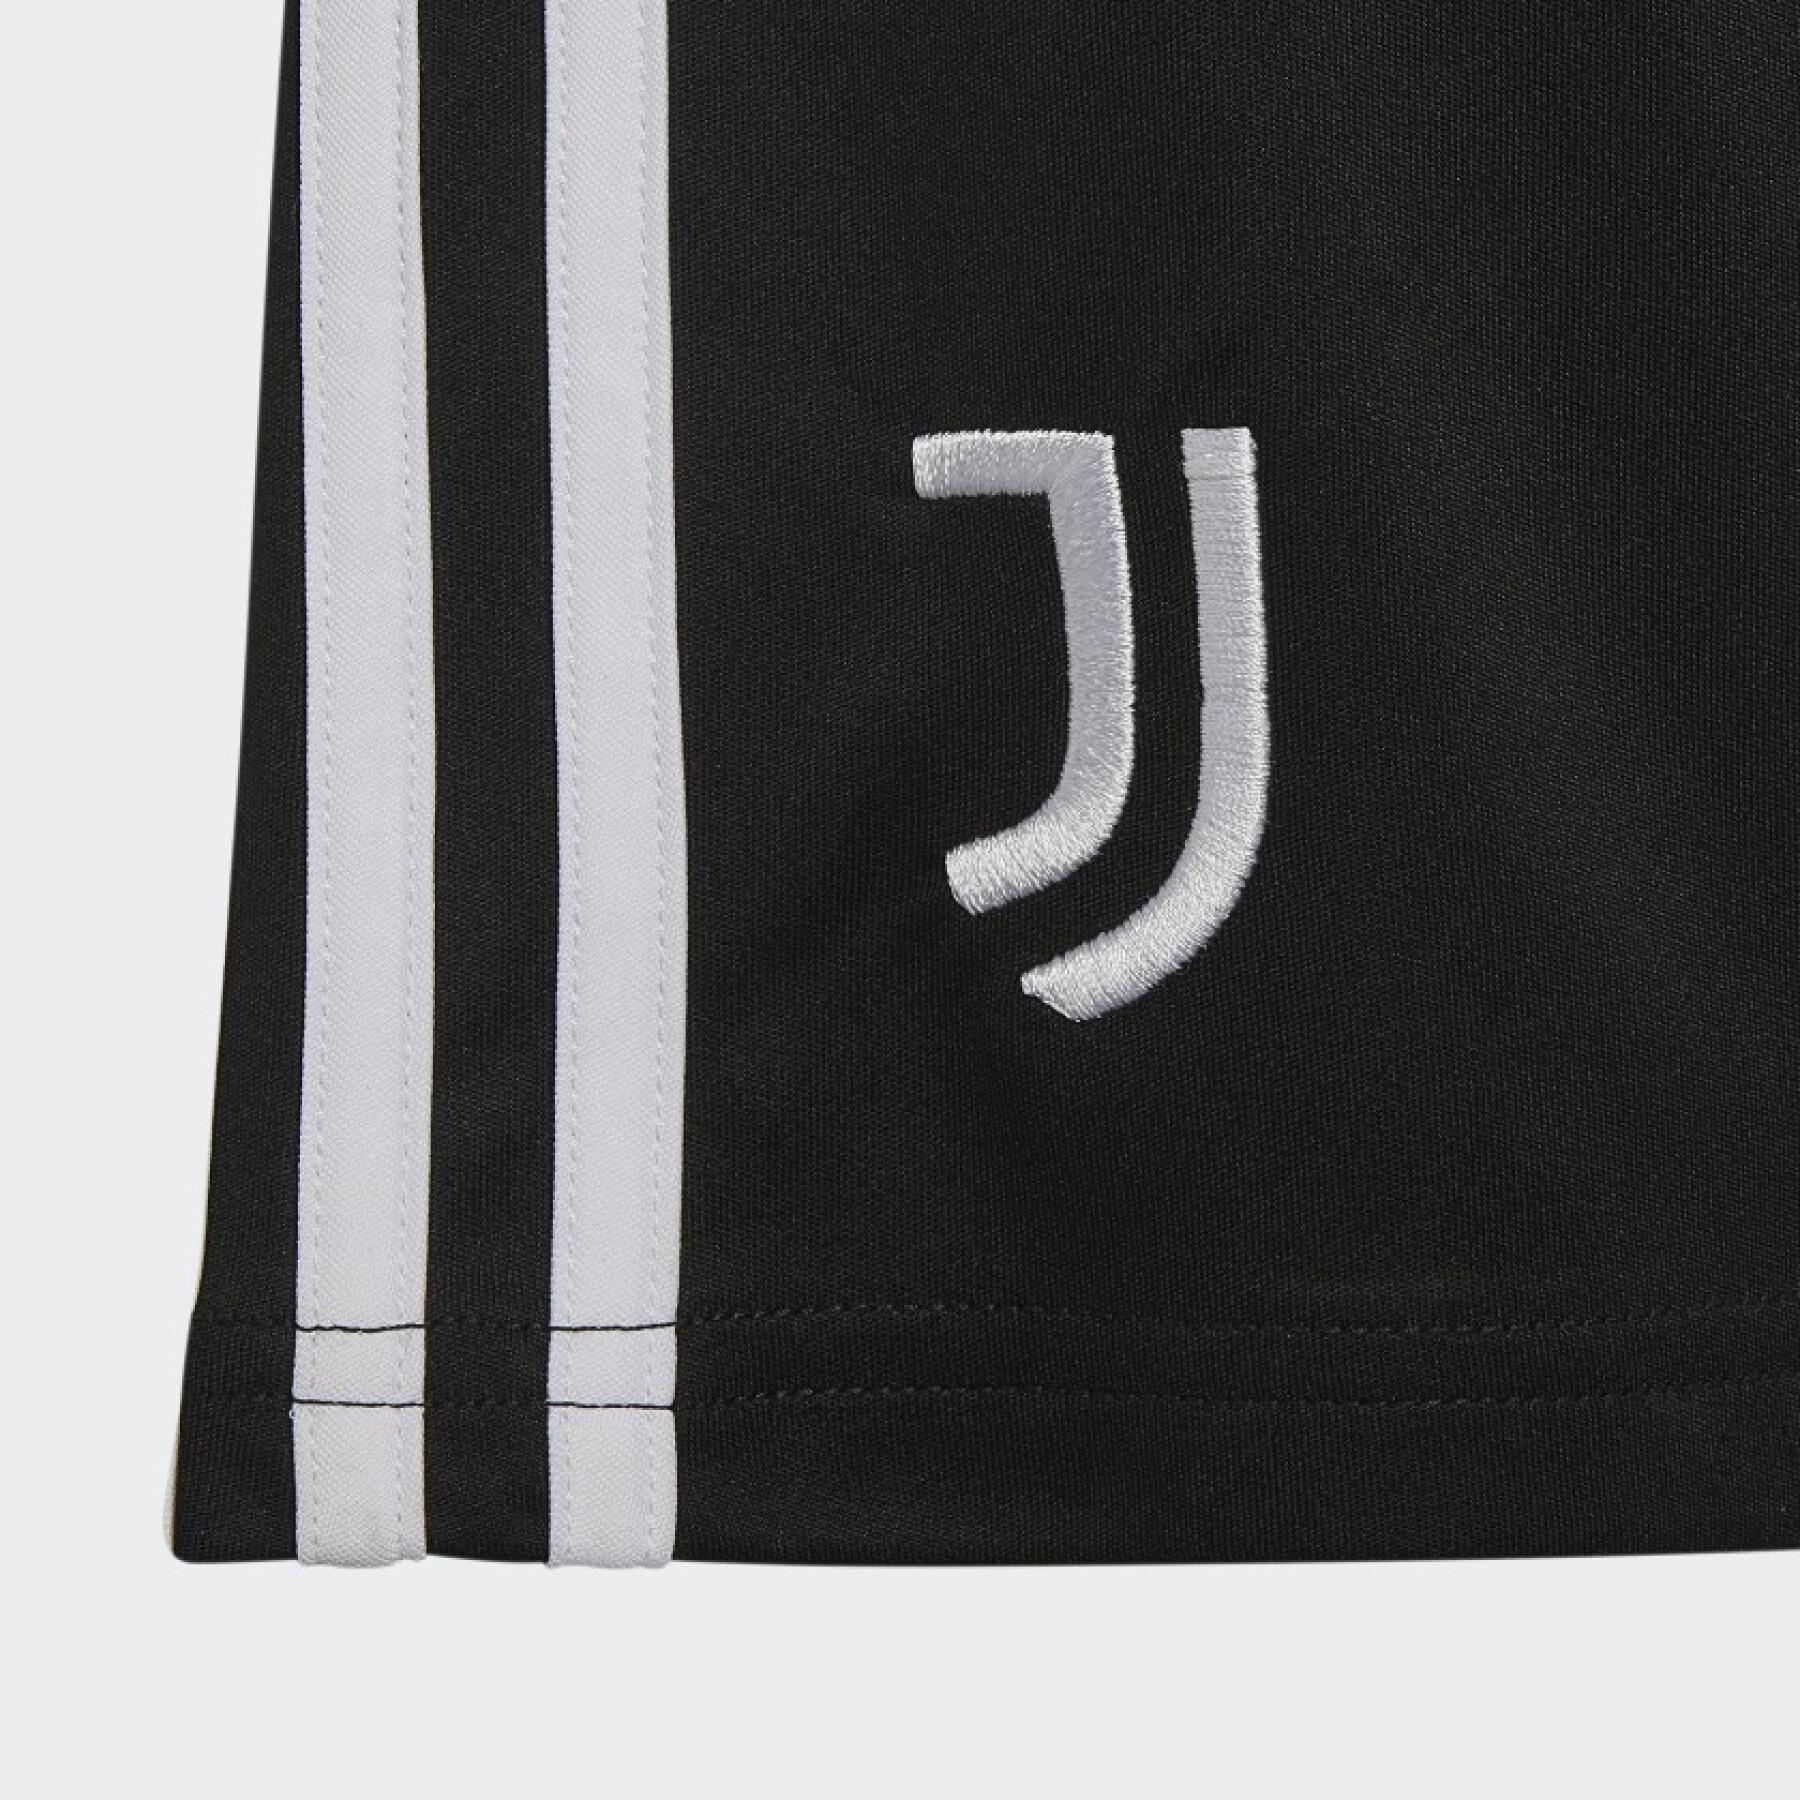 Children's away shorts Juventus Turin 2022/23